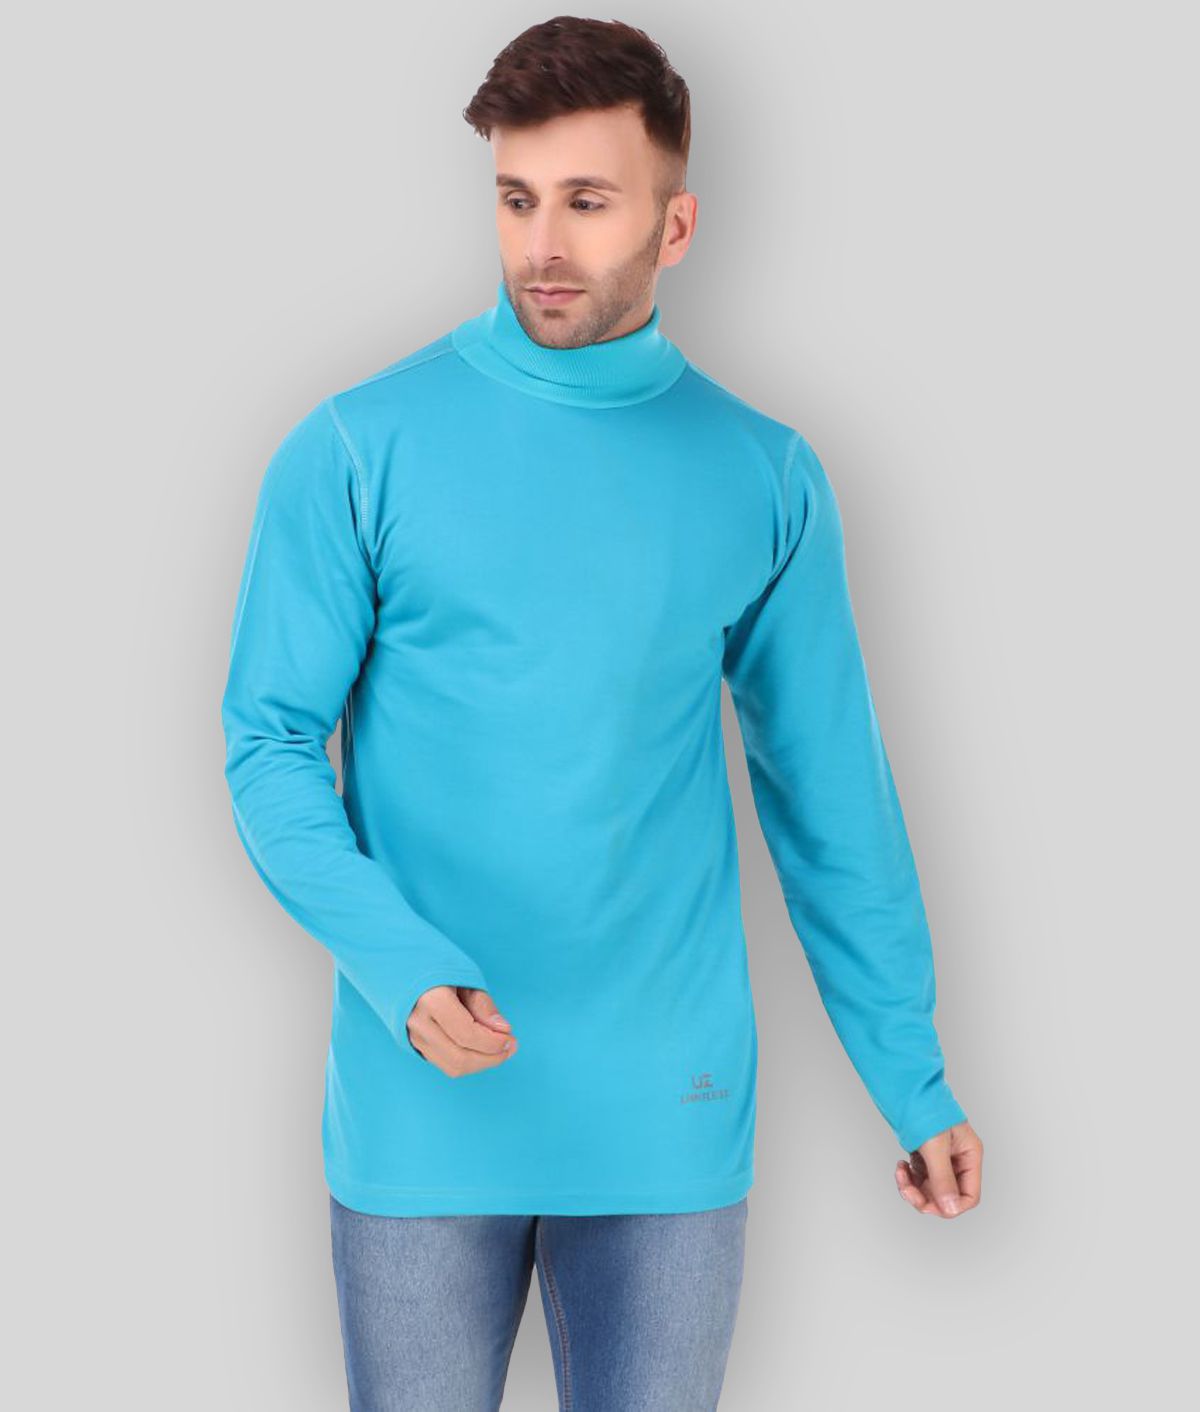     			Uzarus - Blue Cotton Blend Regular Fit Men's T-Shirt ( Pack of 1 )